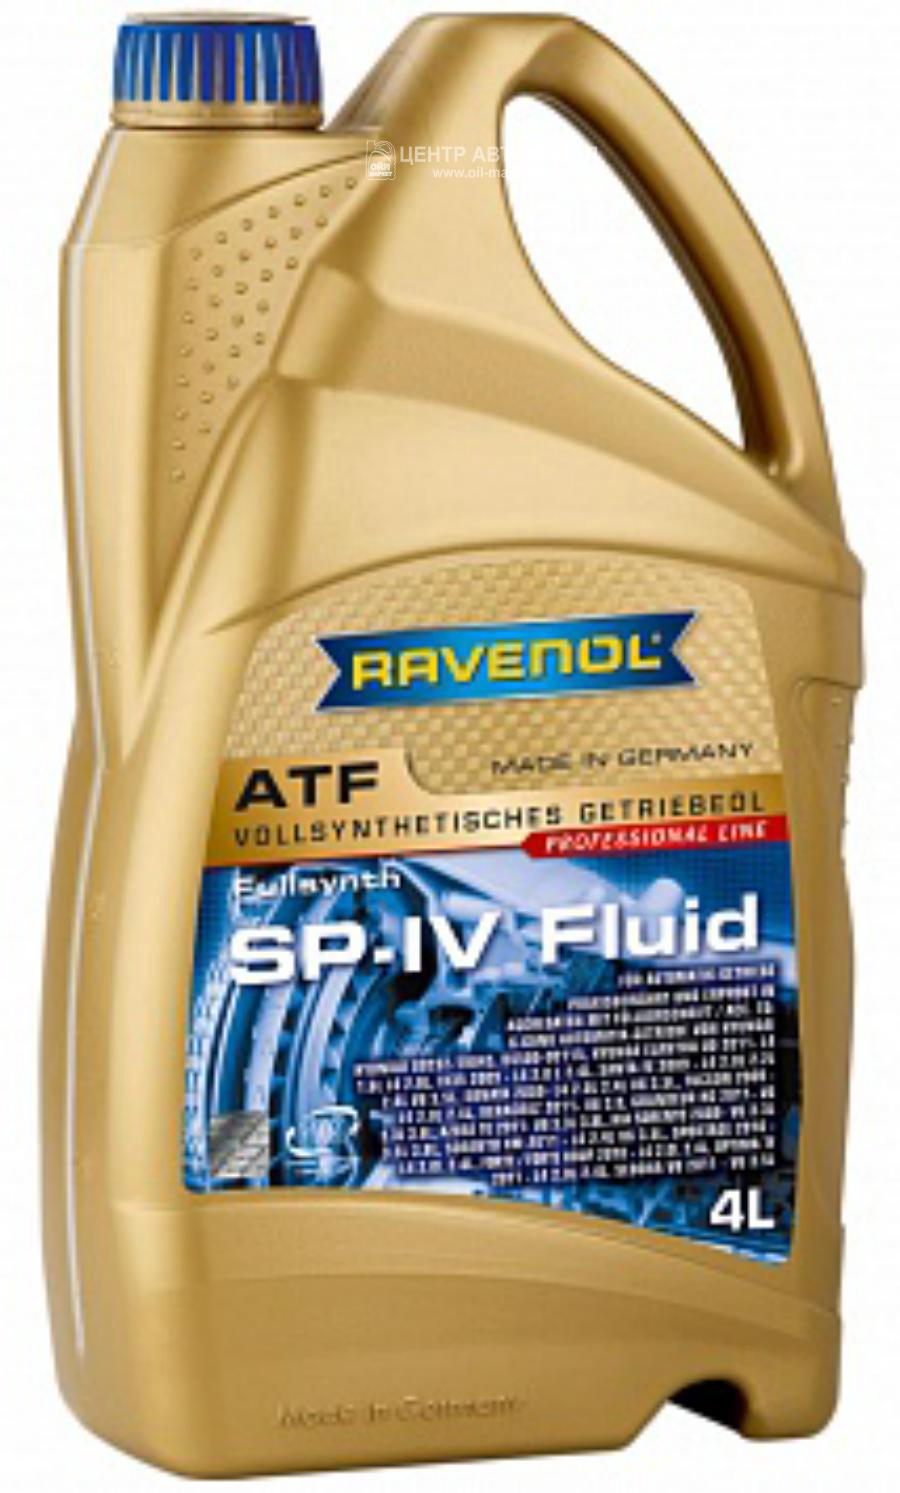 Трансмиссионное масло ravenol atf sp-iv fluid (4л) new